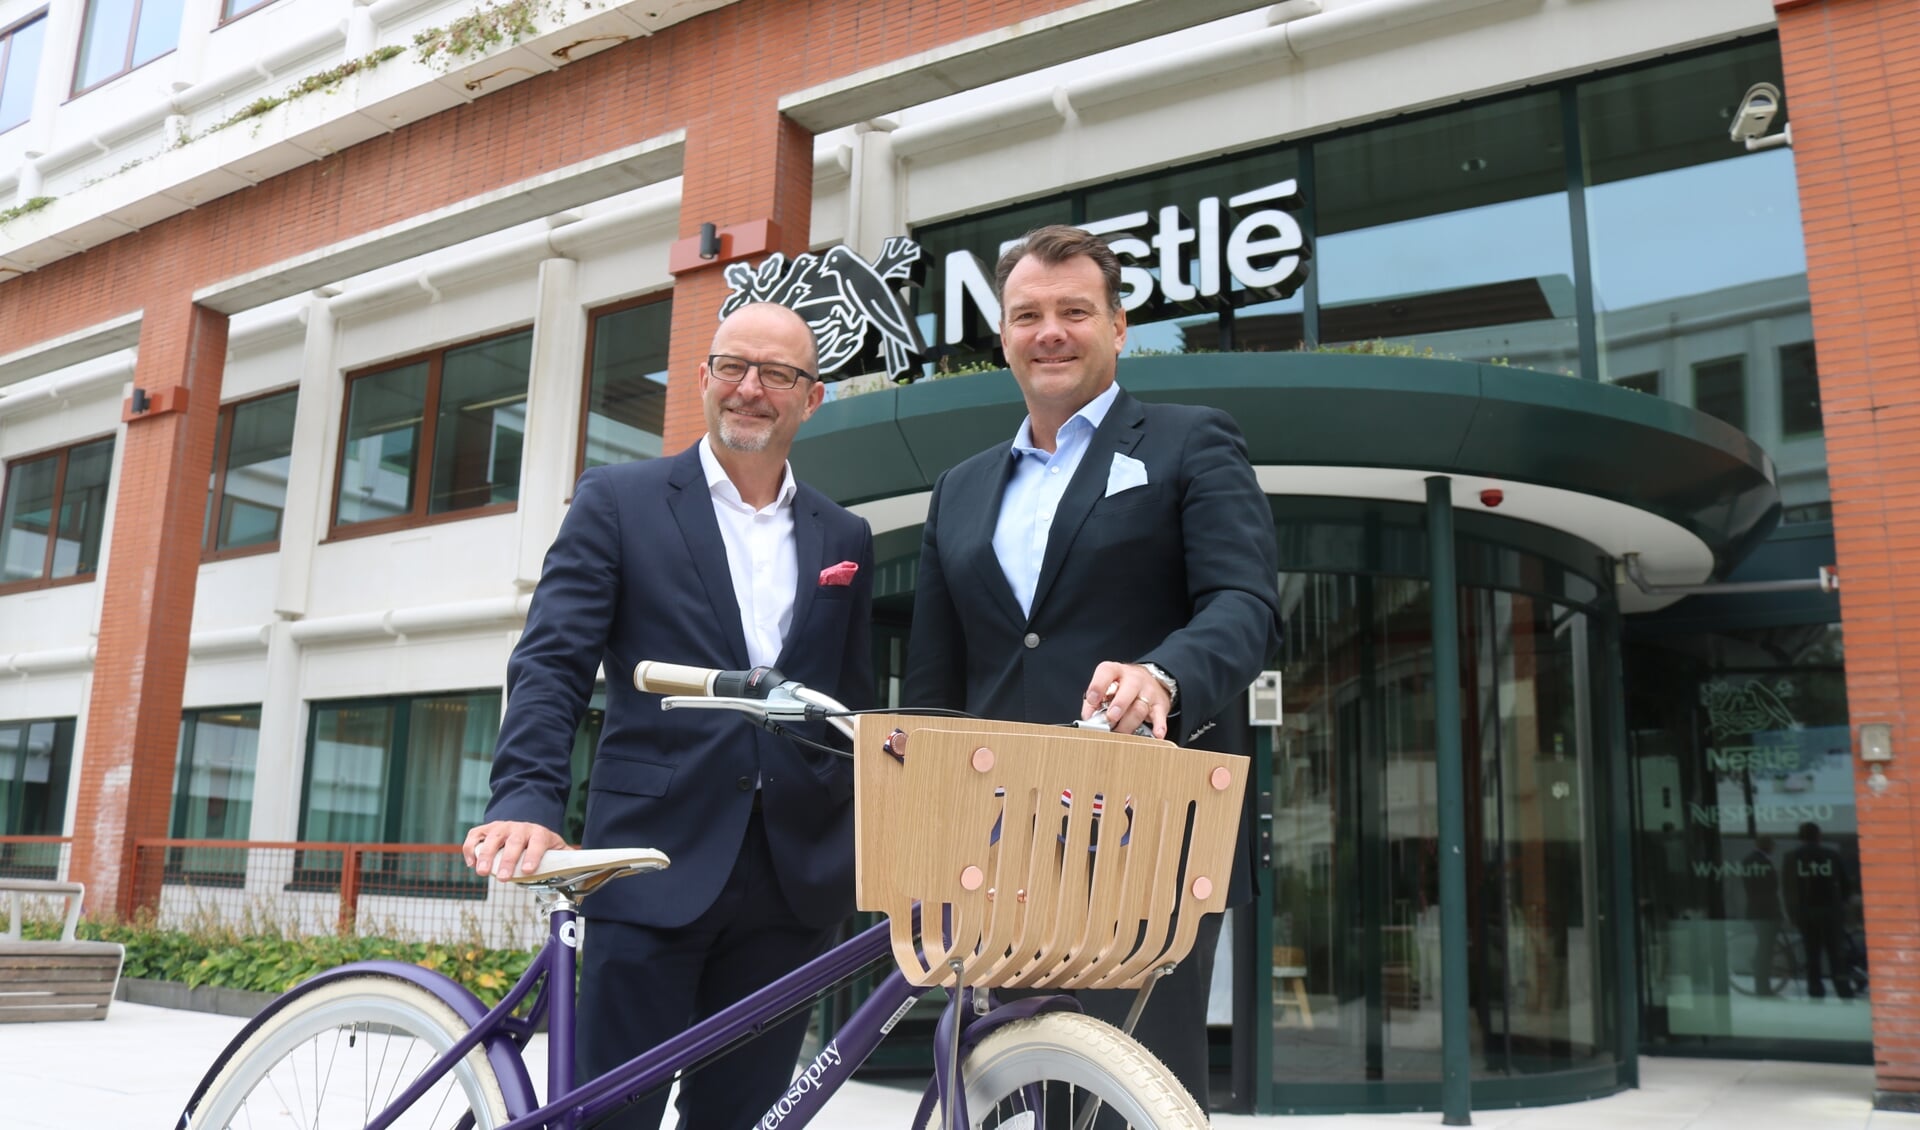 CEO Nestlé Nederland Fabrice Favero (rechts) met Daniel Schneider, BEO Nespresso. en een fiets gemaakt van koffiecapsules.

